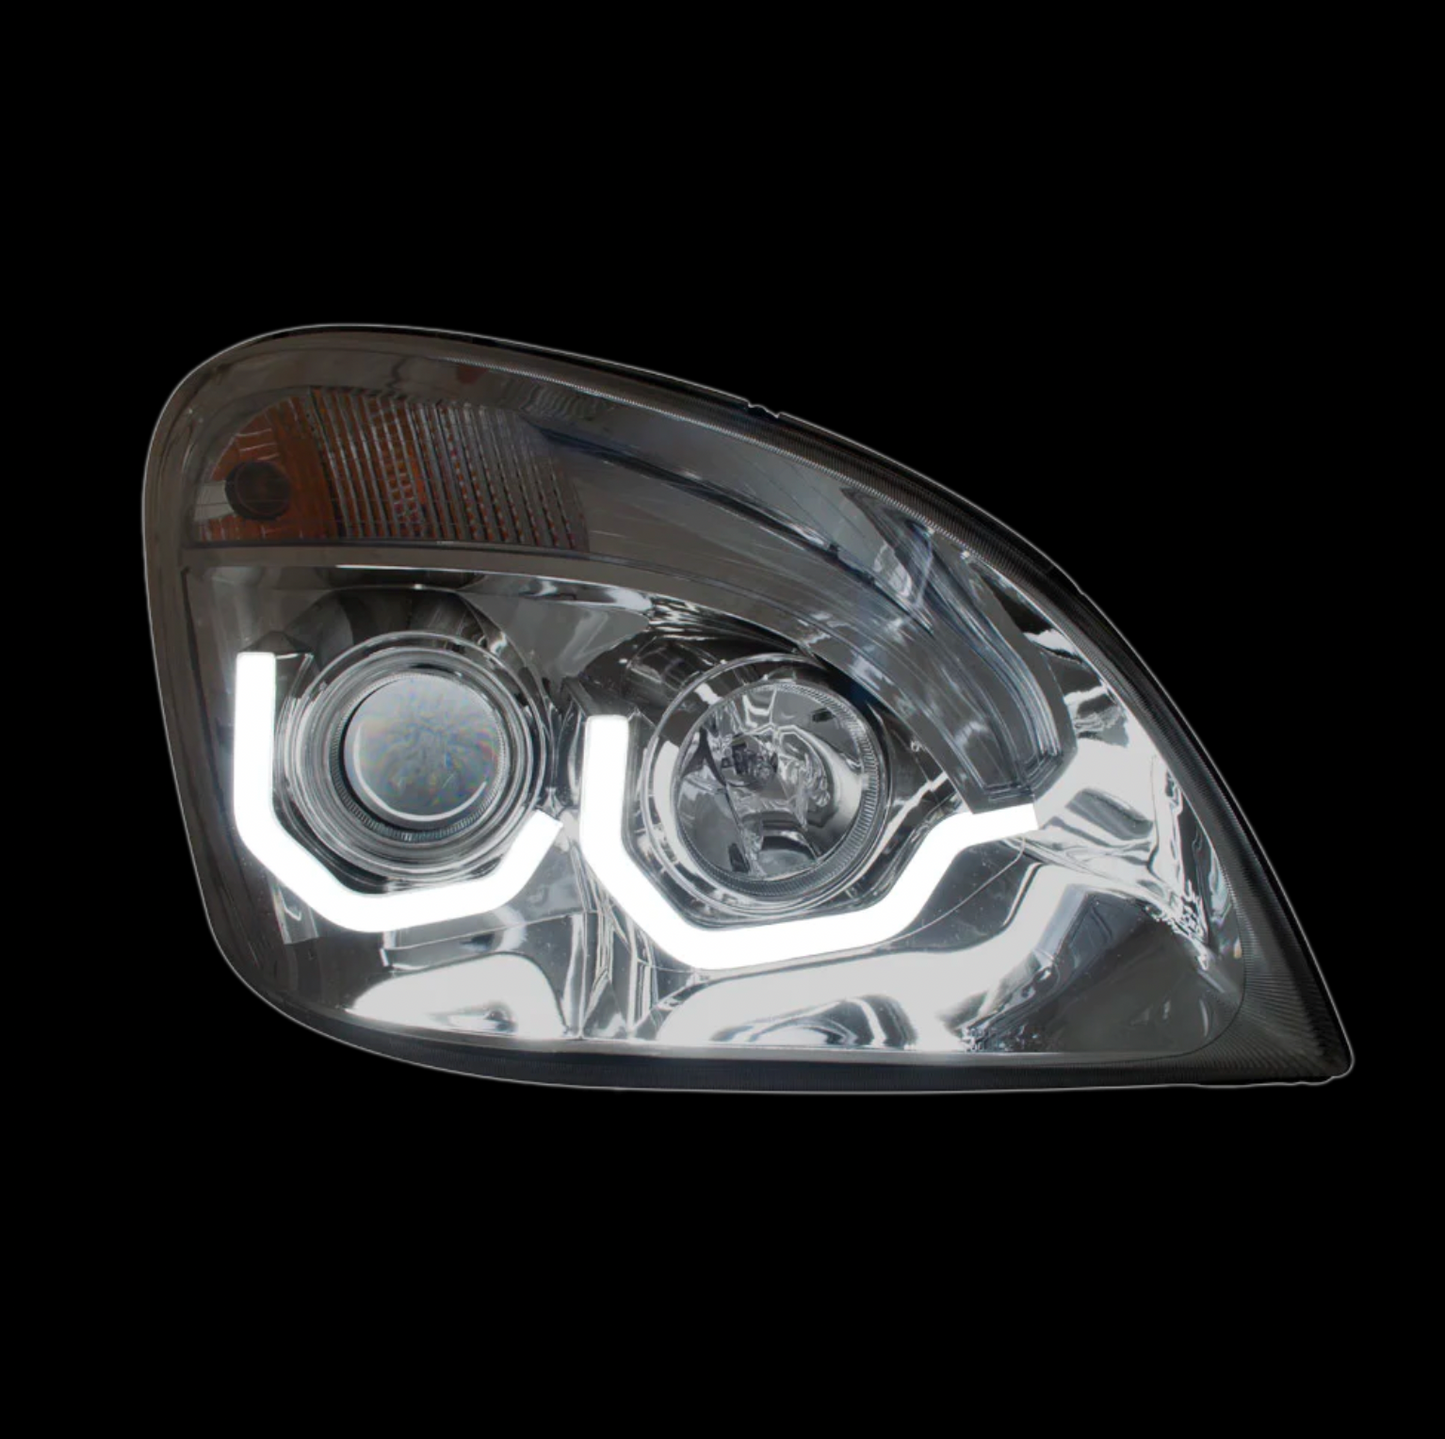 Chrome Cascadia Headlight With LED Bar